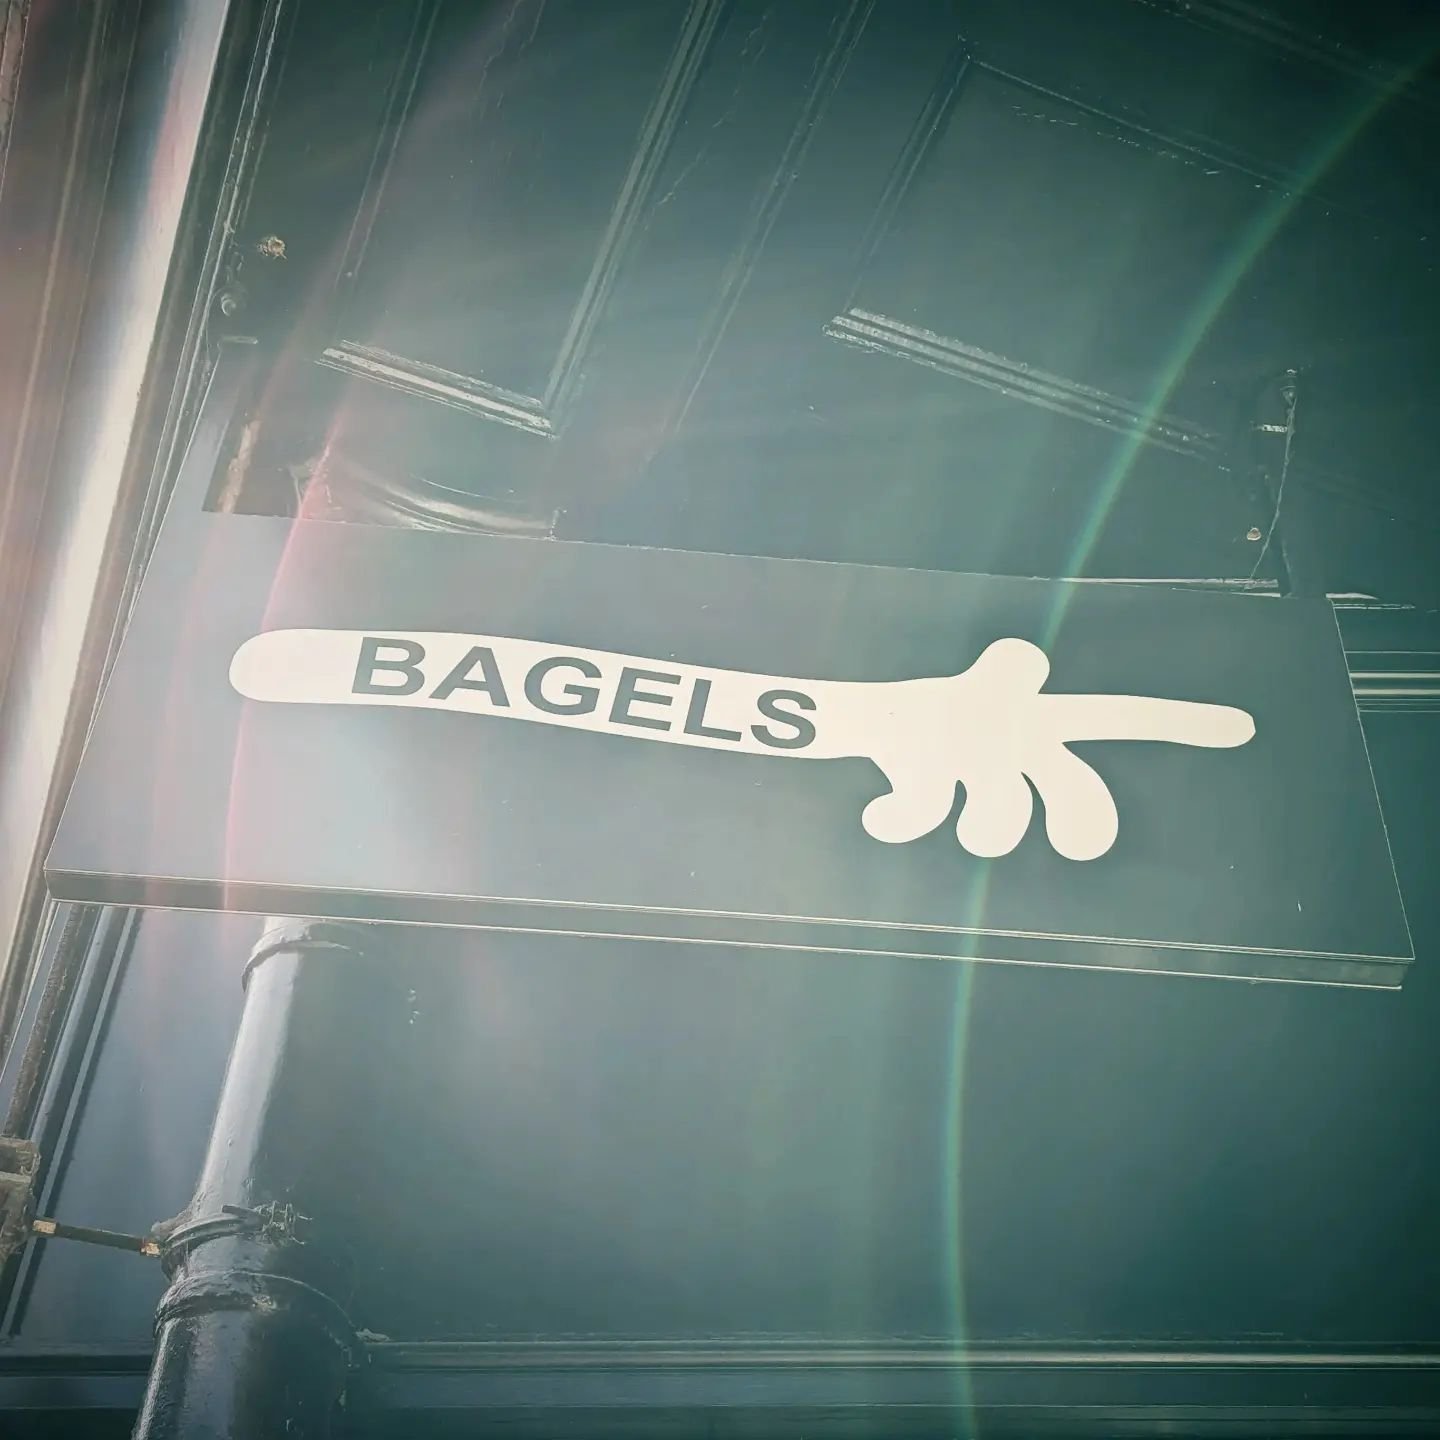 Bagels this way. 
14 Church Street, Falmouth, Cornwall.